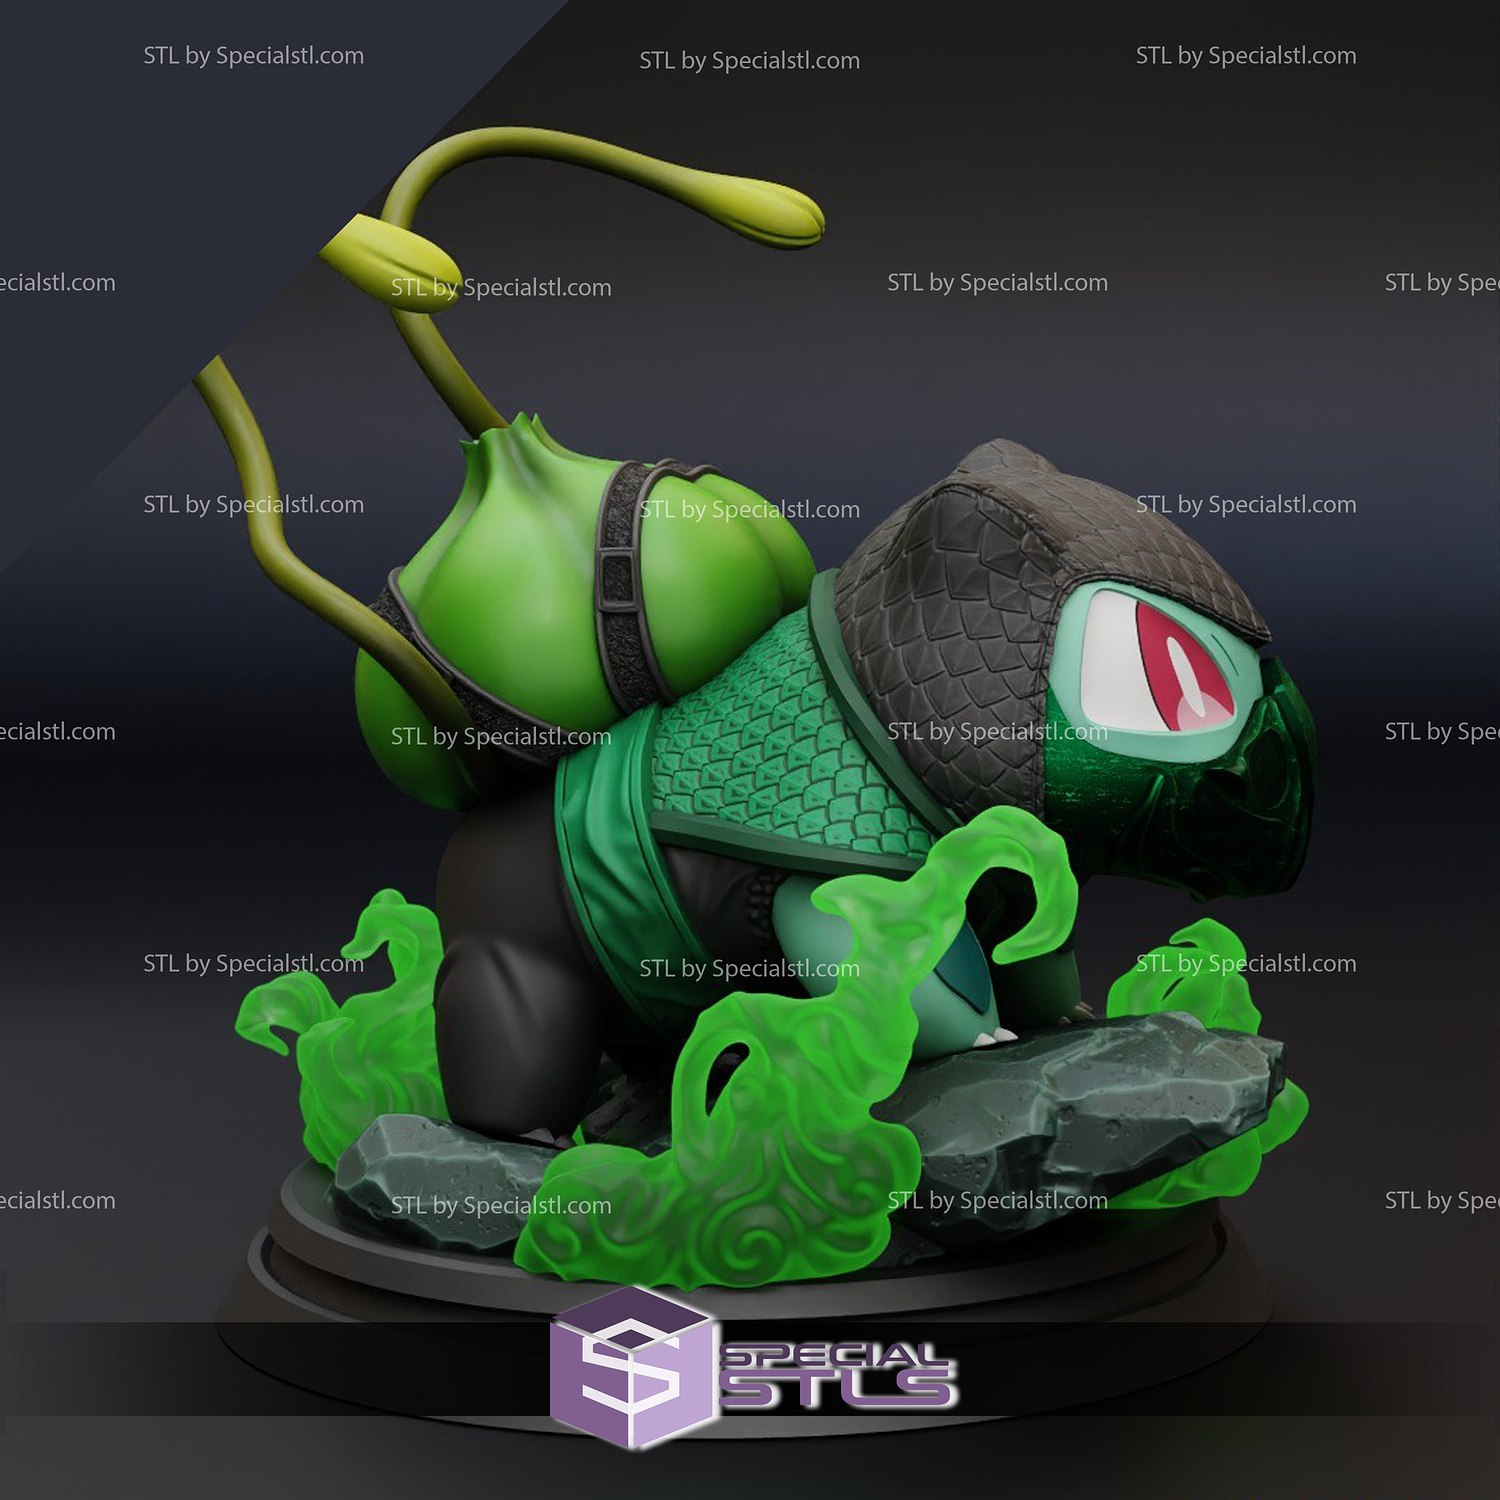 Bulbasaur Reptile STL Files 3D Printable Fanart